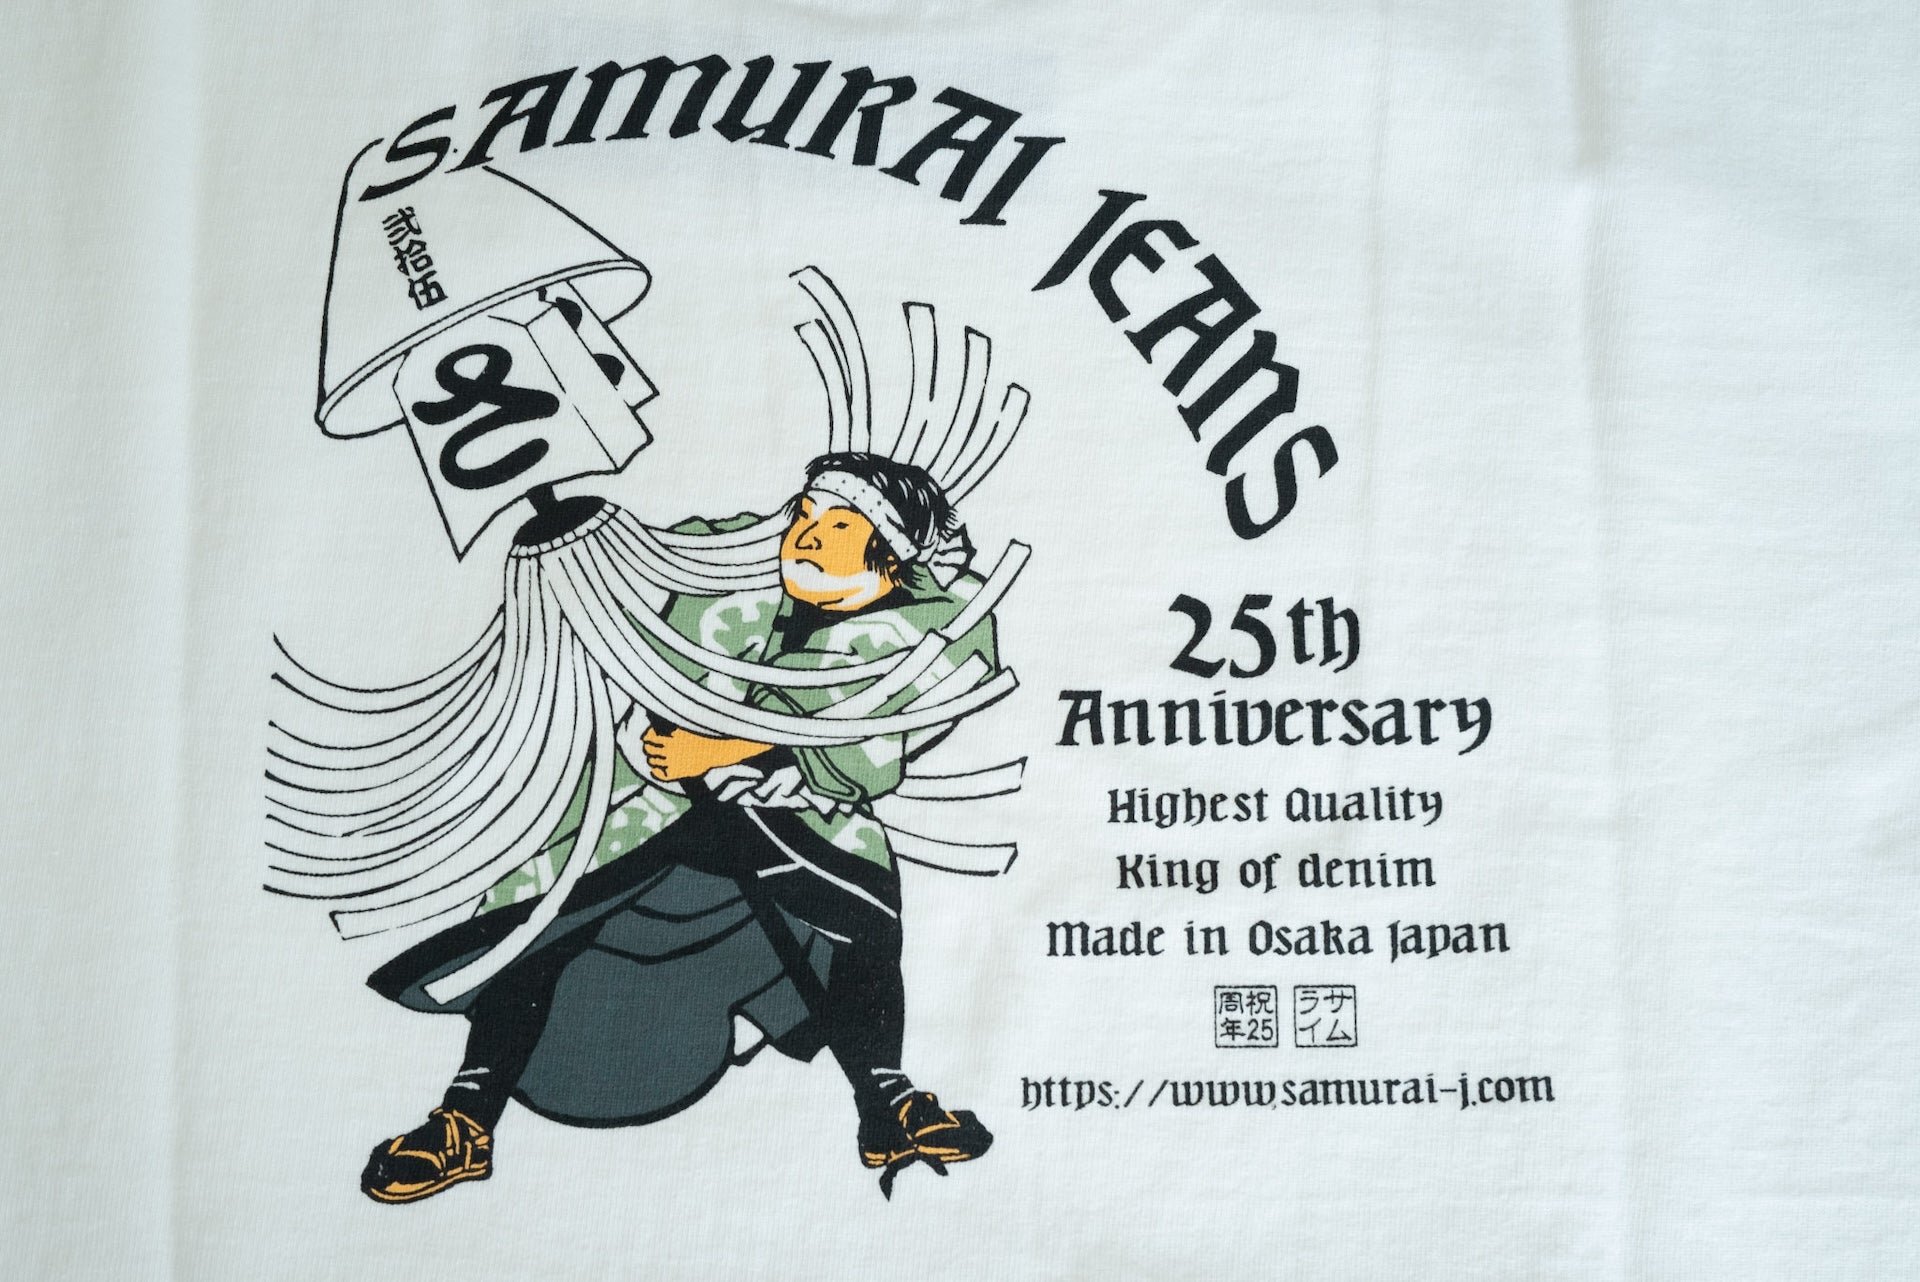 Samurai 8.5oz "Yakuyoke" 25th Anniversary Loopwheeled Tee (White)